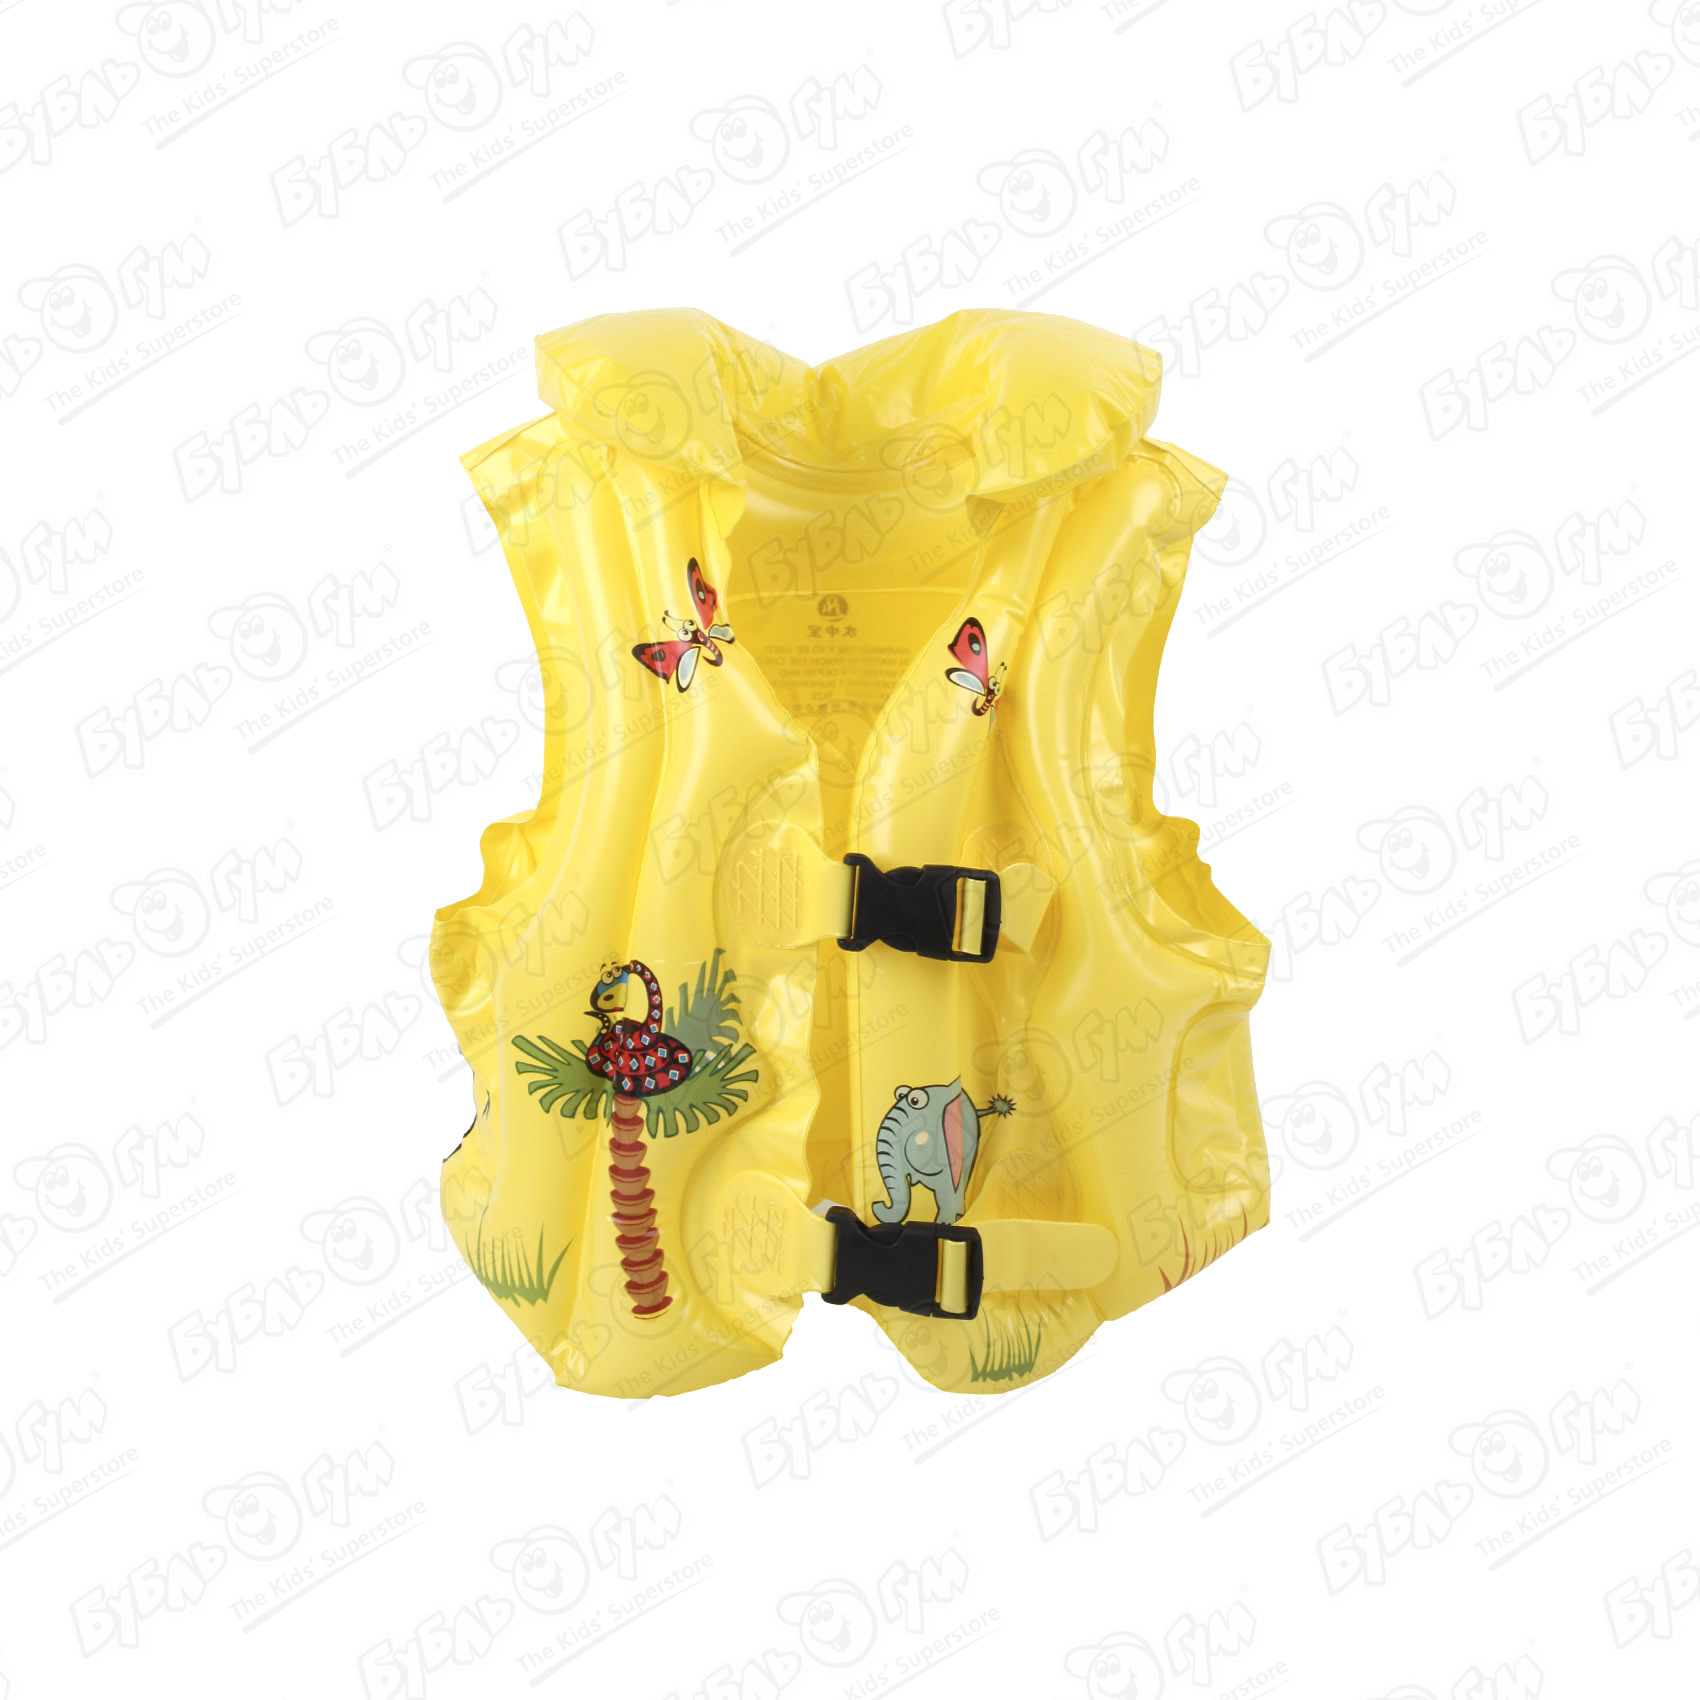 Жилет надувной SWIM VEST для плавания с принтом в воротником в ассортименте жилет надувной swim vest для плавания с узором в ассортименте